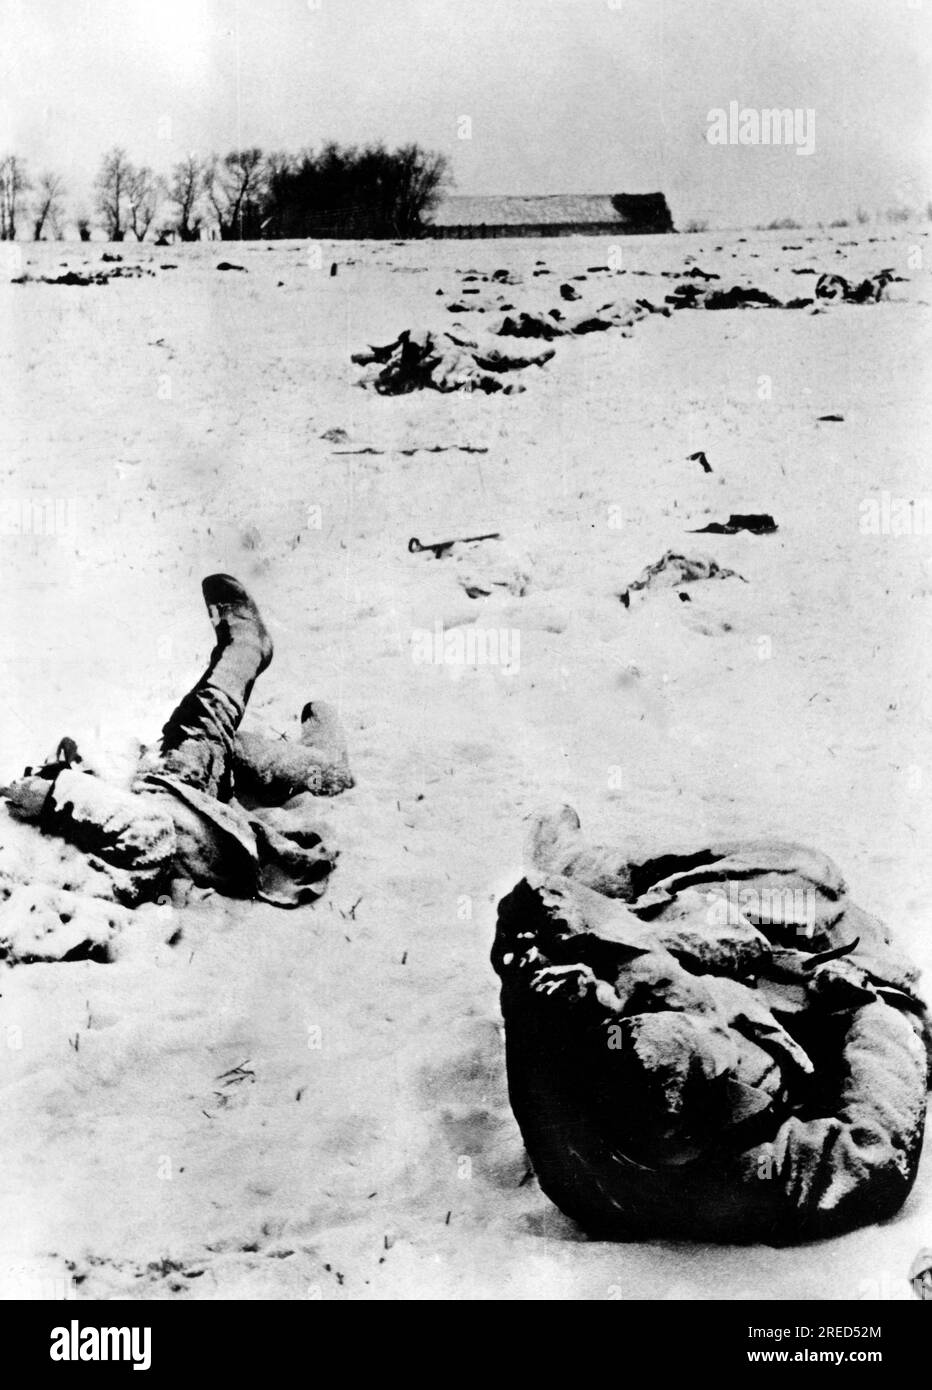 Soldats russes morts devant une position allemande, probablement dans la section centrale du front de l'est. Photo : Kraayvanger. [traduction automatique] Banque D'Images